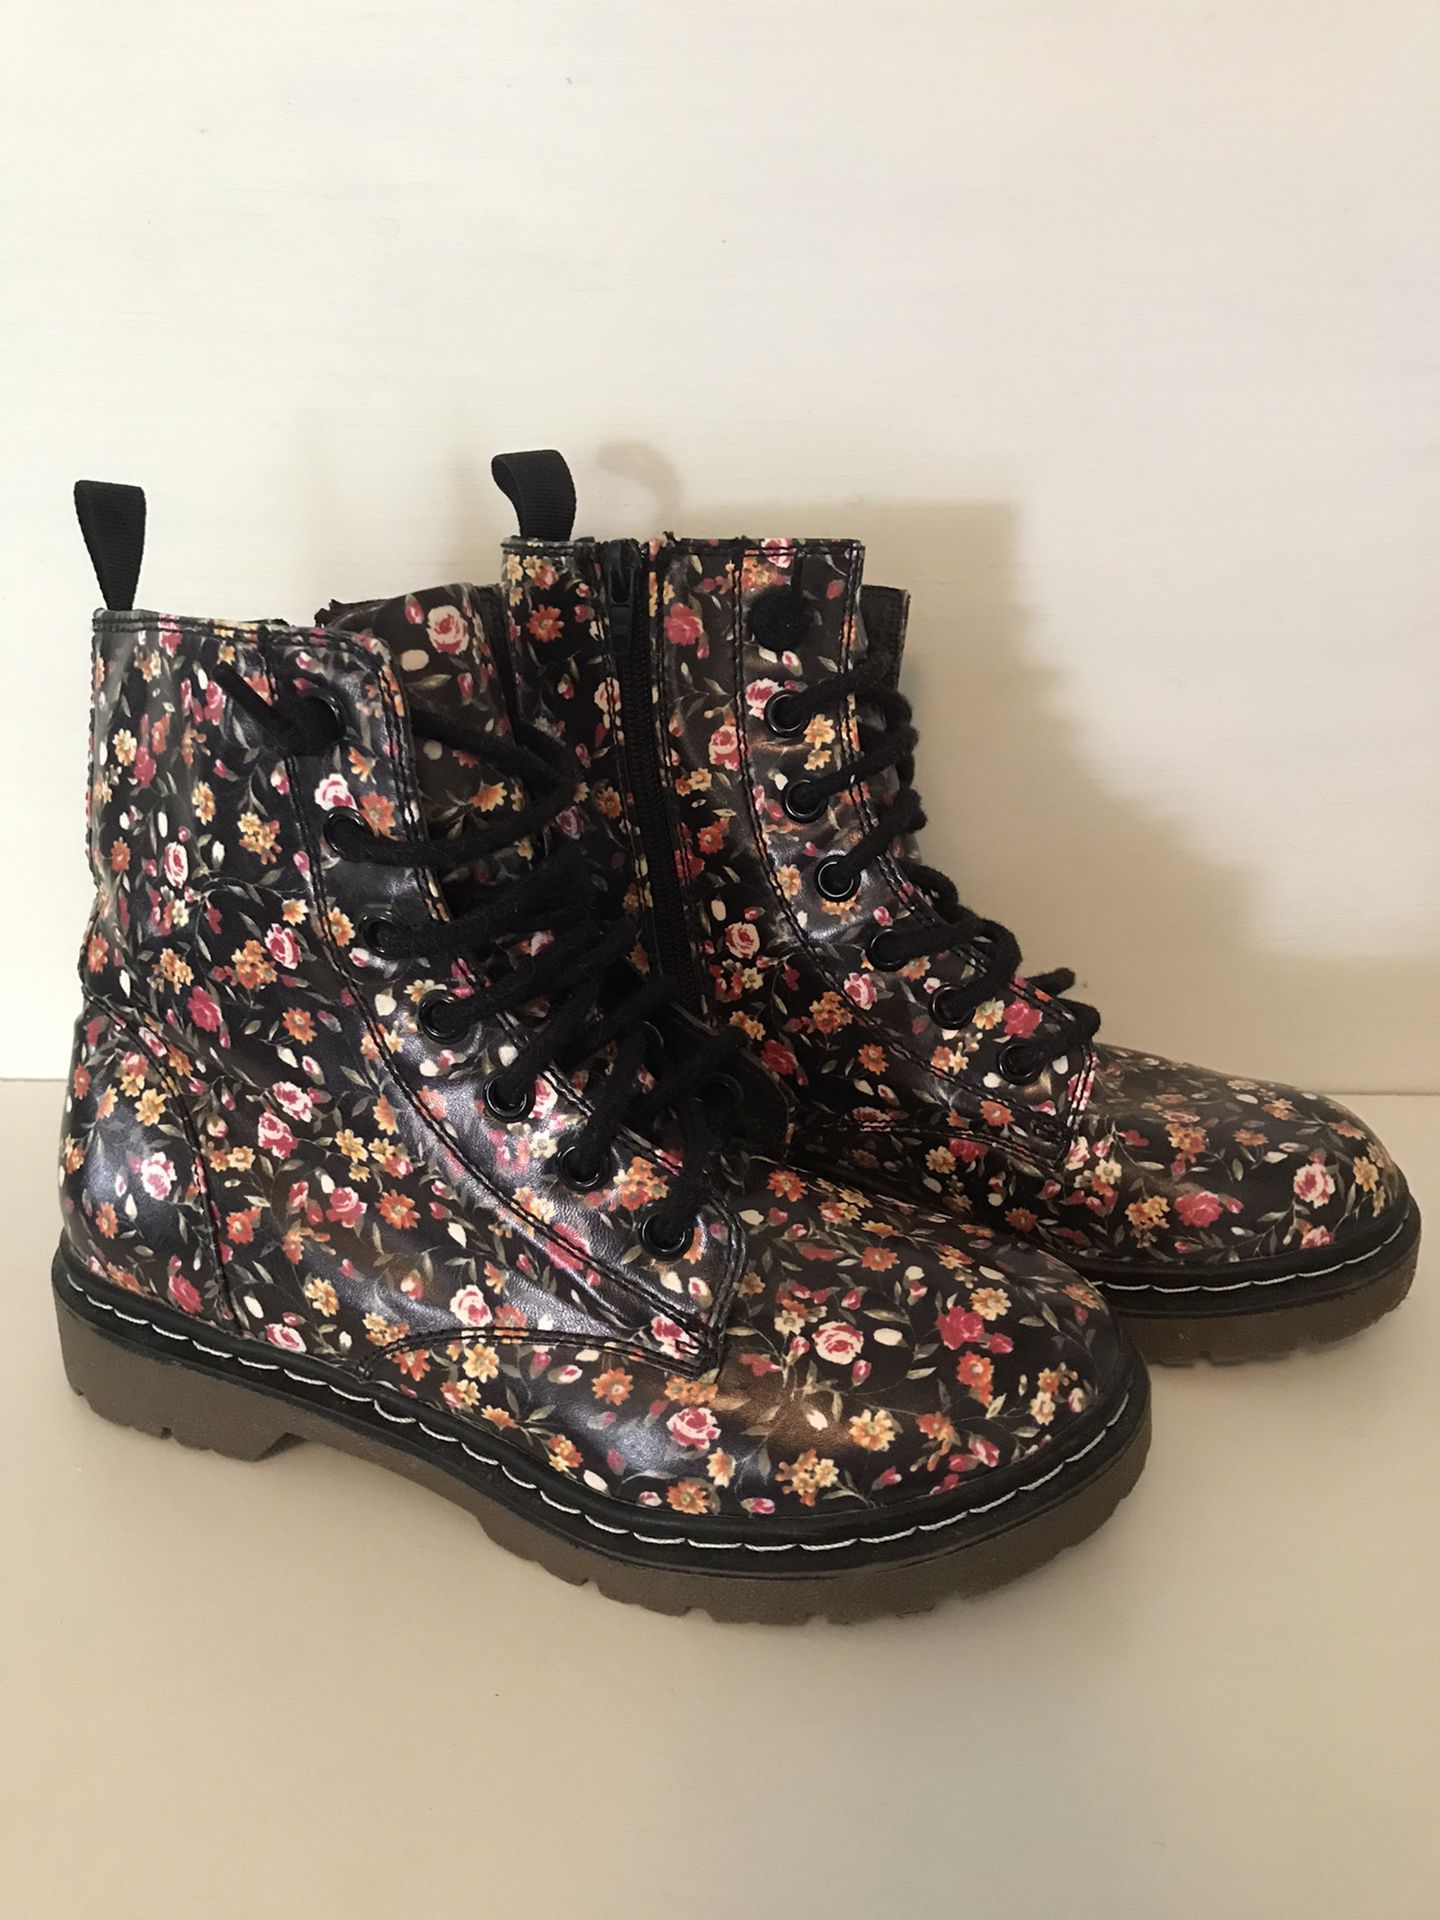 FLORAH Rain Boots Size Women’s 7.5/8